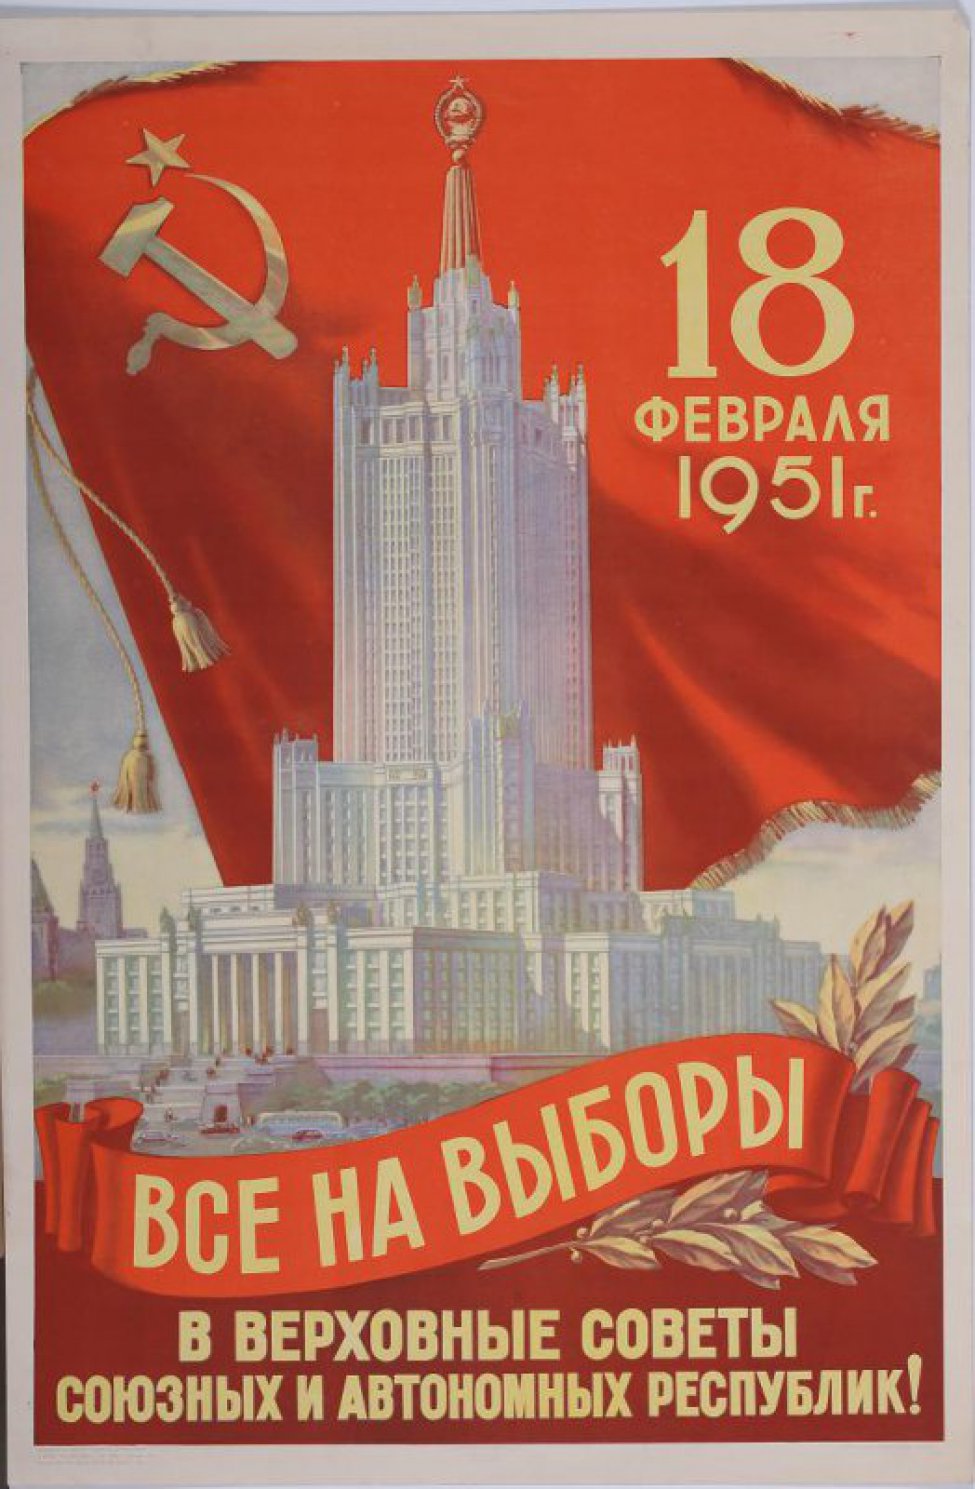 На фоне красного знамени с серпом и молотом и надписью "18 февраля 1951г." изображено высотное здание. Вдали видны кремлевские башни. Ниже здание, на стяге призыв:" Все на выборы,- в Верховный Совет союзных и автономных республик.